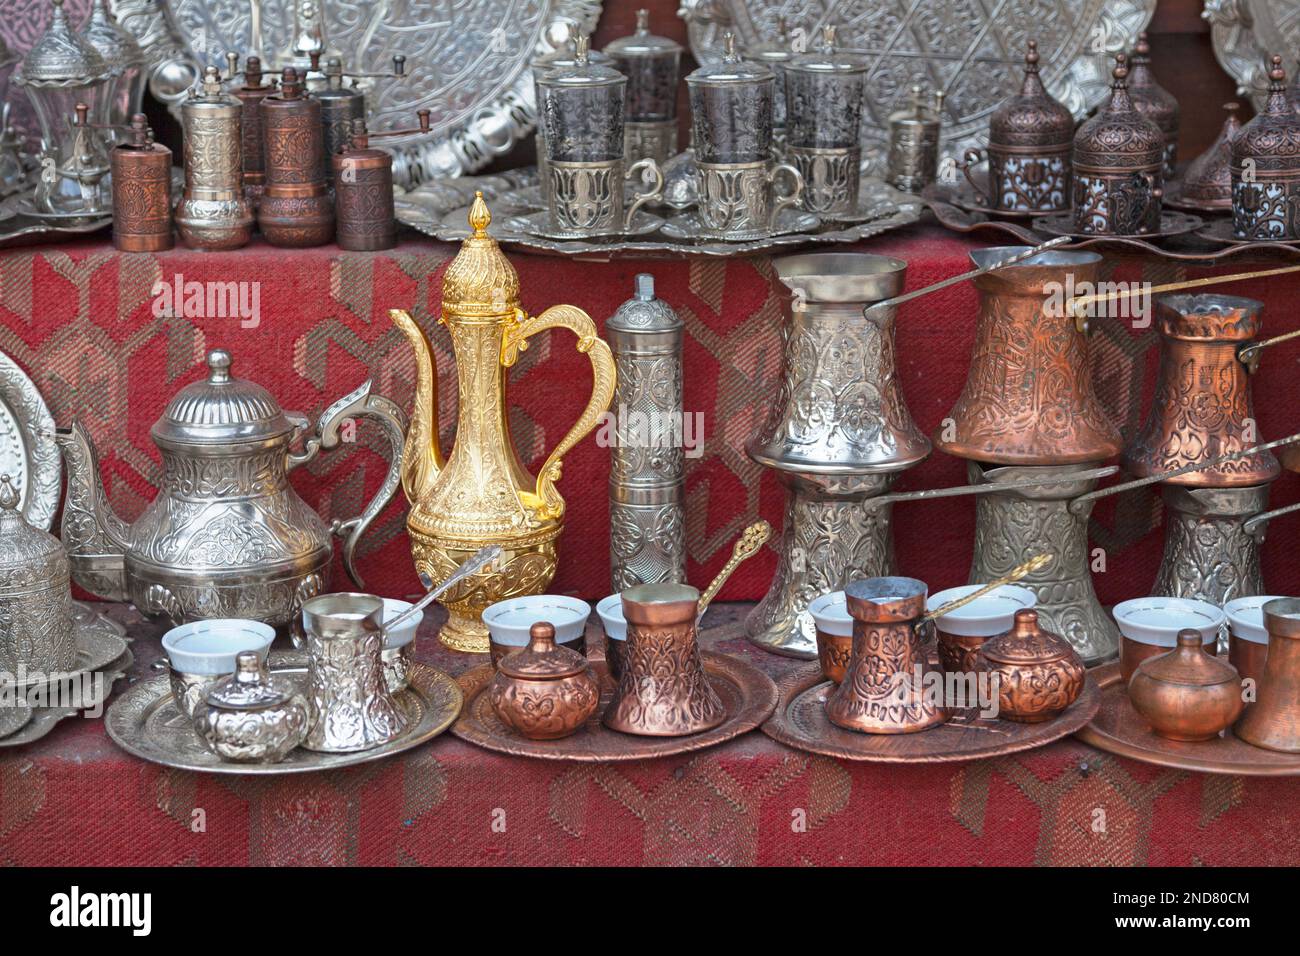 Traditionelle osmanische Kaffee- und Teekannen zum Verkauf im alten Basar von Sarajevo, Bosnien und Herzegowina. Stockfoto